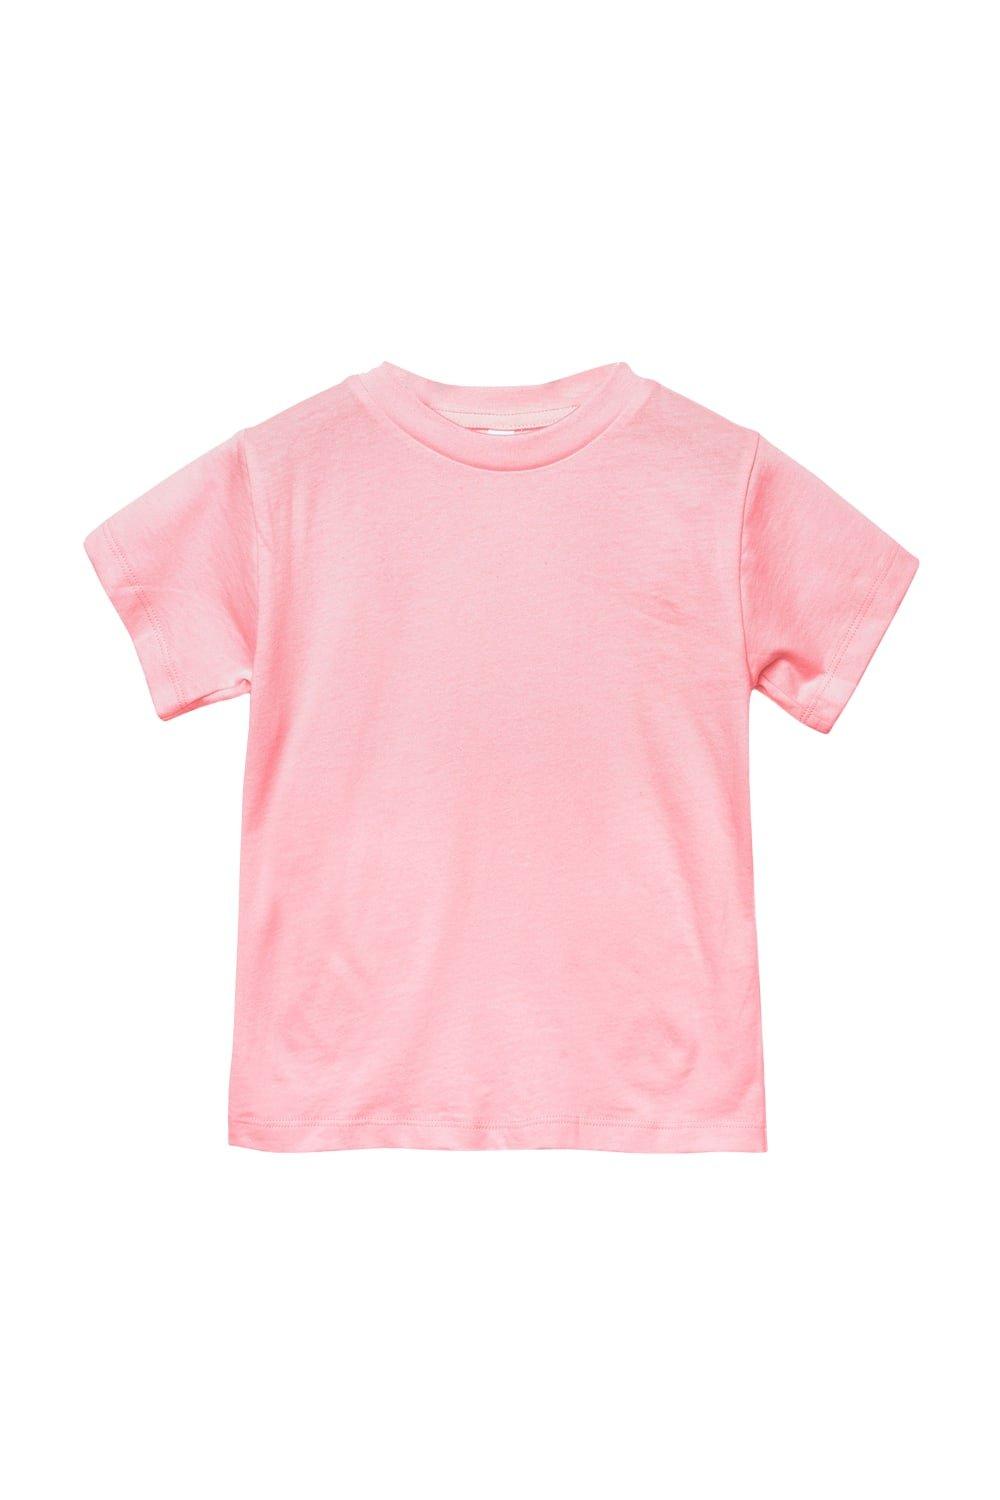 Футболка из джерси с коротким рукавом Bella + Canvas, розовый мужская футболка из холщового джерси с коротким рукавом и v образным вырезом bella canvas